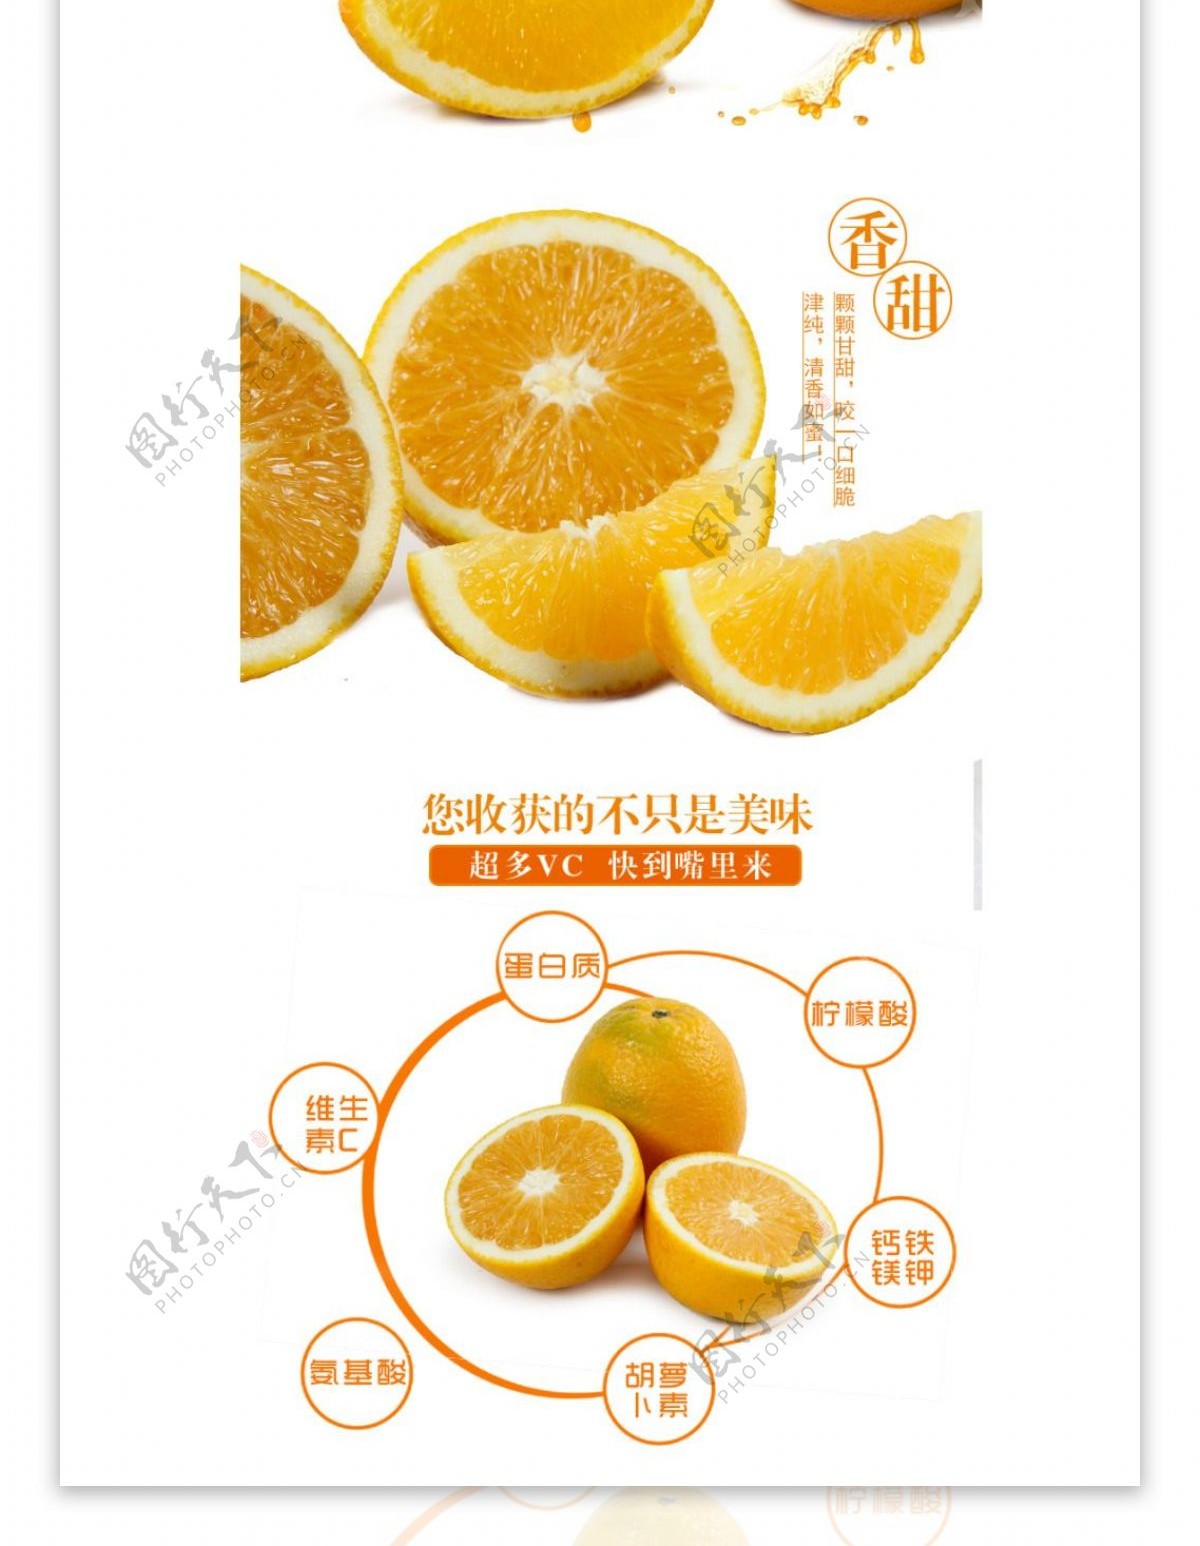 橙子淘宝详情页面